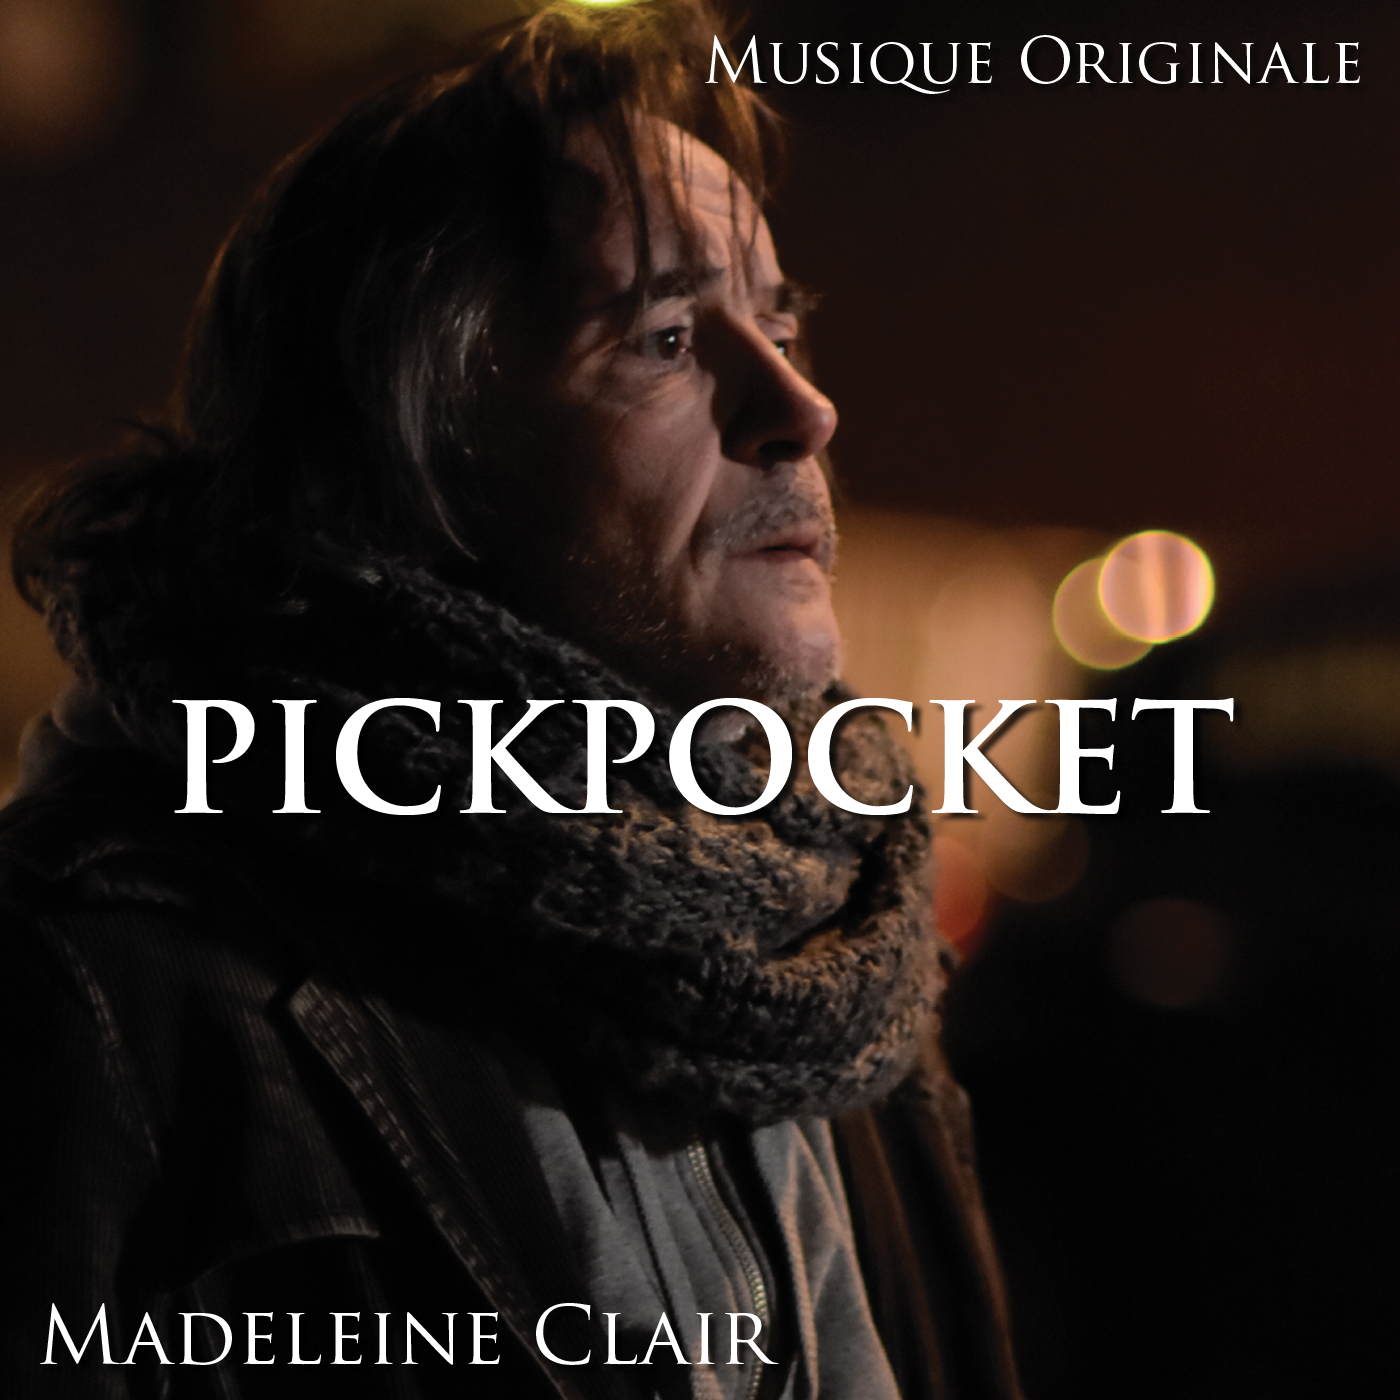 Pickpocket (musique originale) - Madeleine Clair